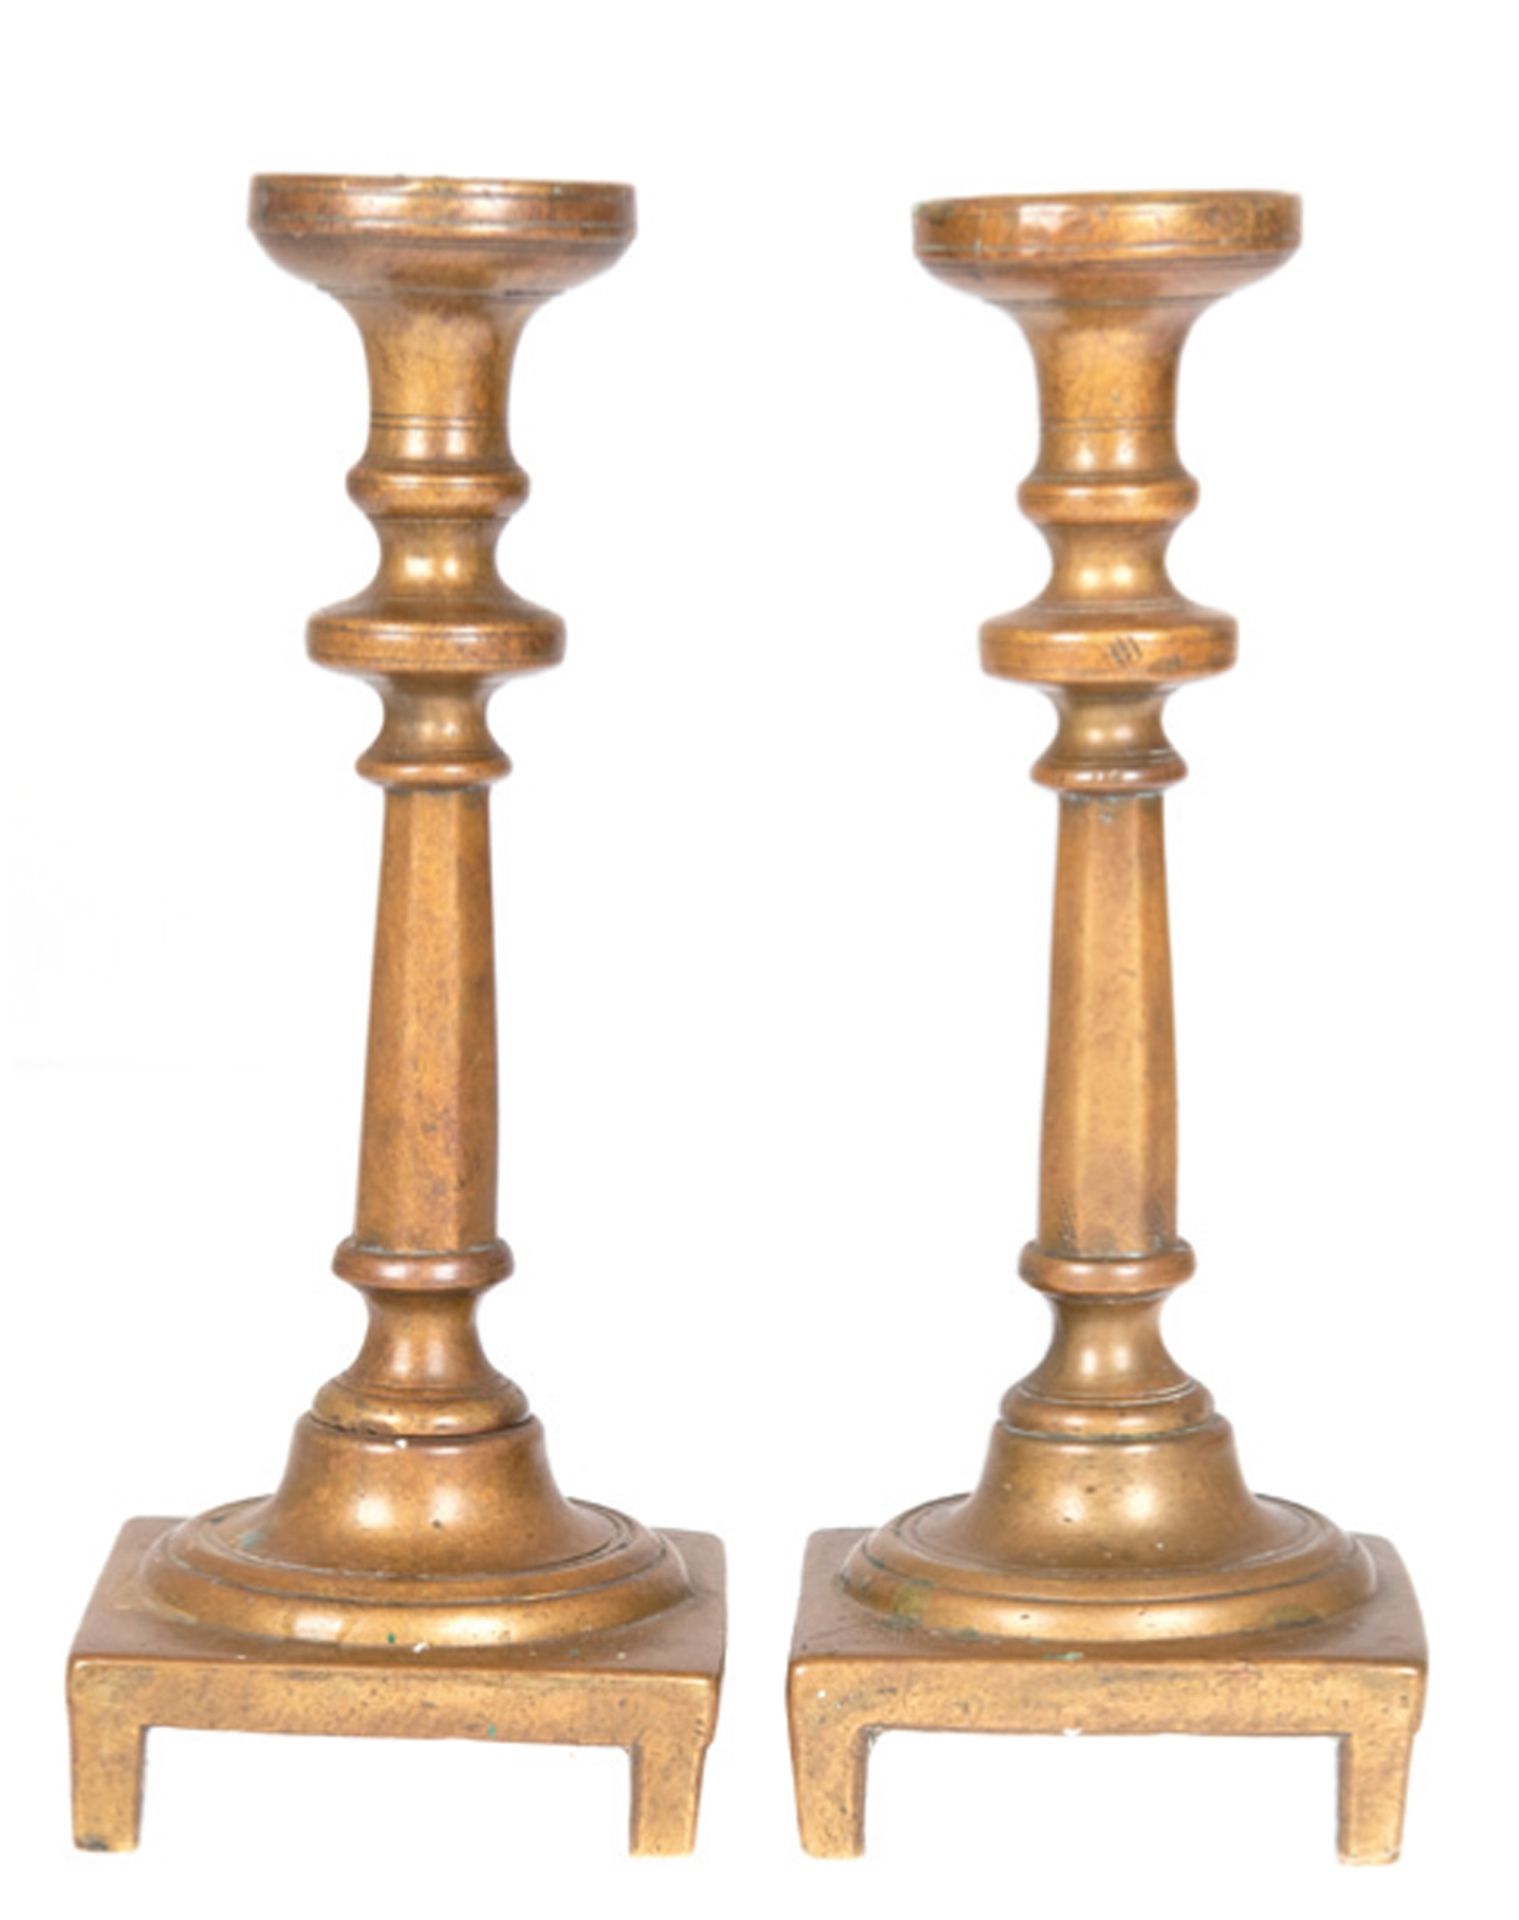 Paar Bronze-Leuchter,19. Jh., einkerzig, quadratischer Stand mit 4 Füßen, verschraubter, gegliedert